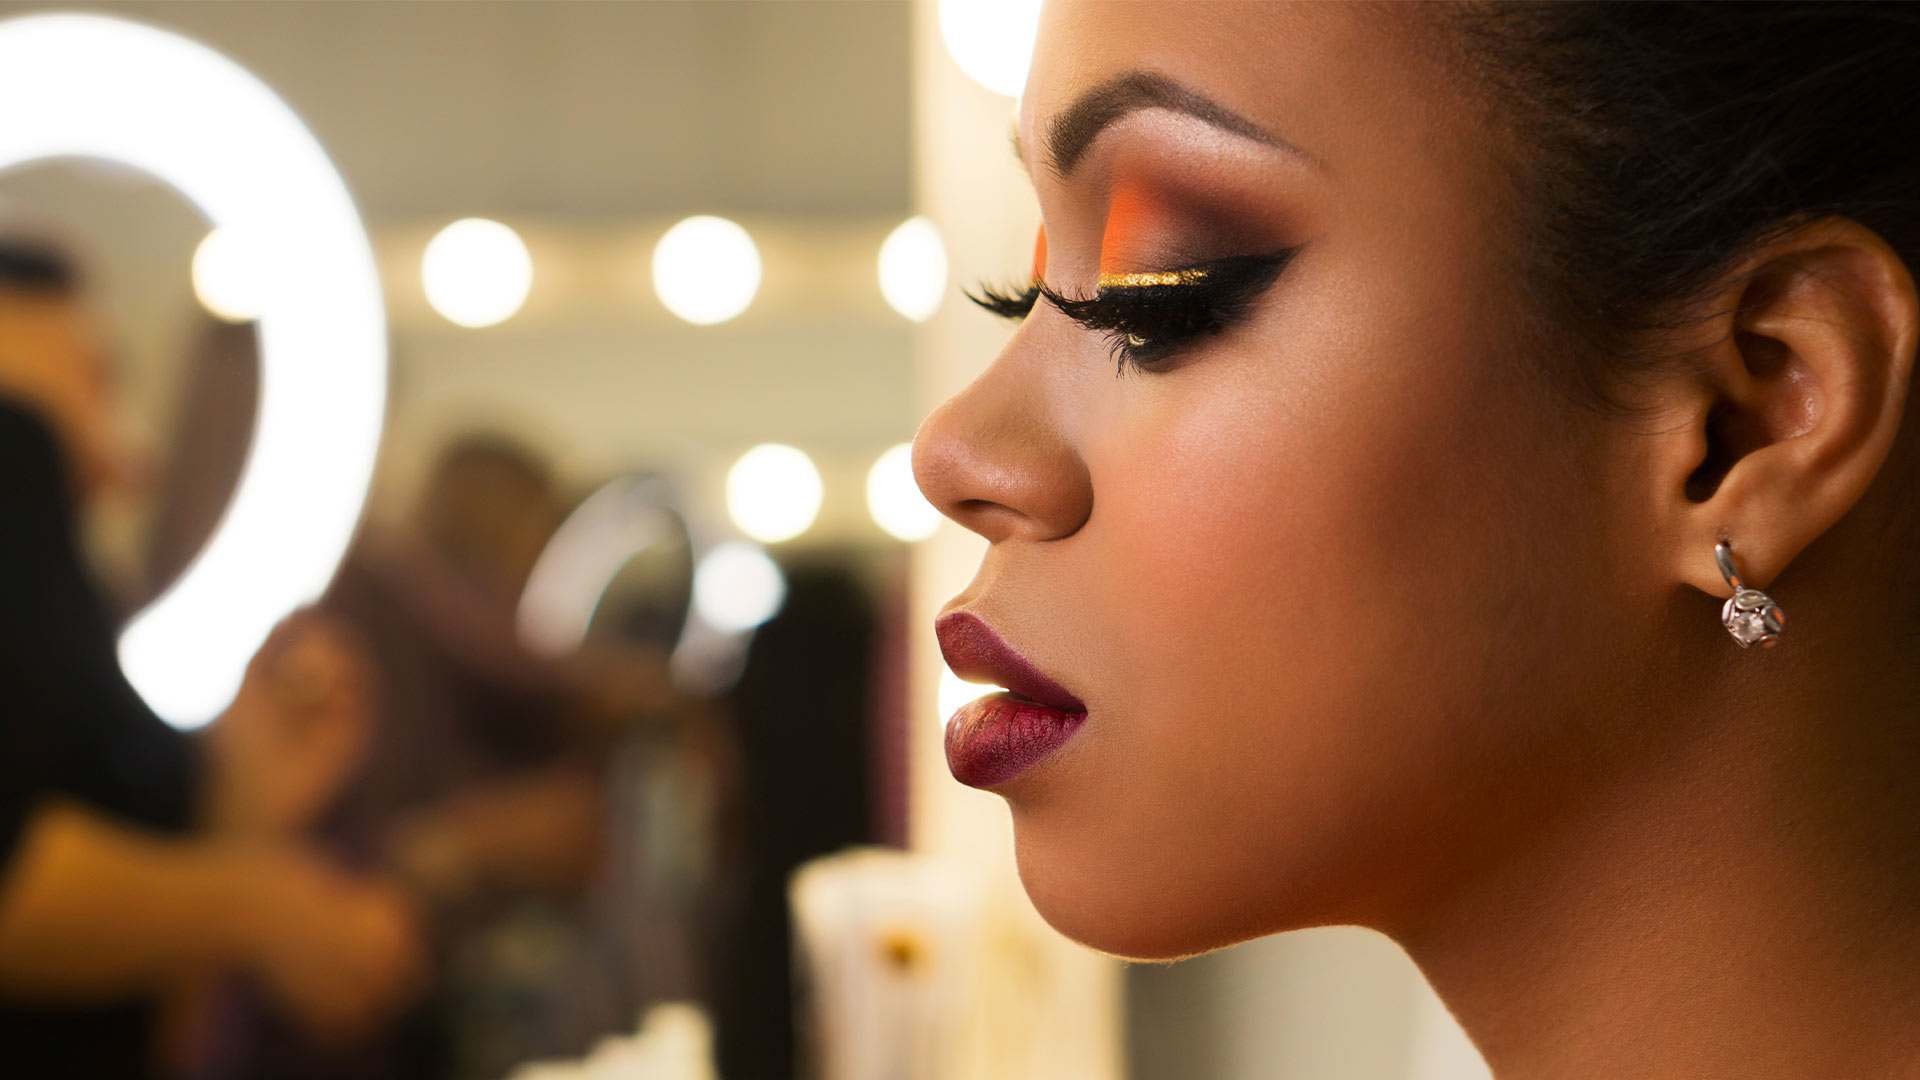 The Best Makeup for Black Women to Try - L'Oréal Paris